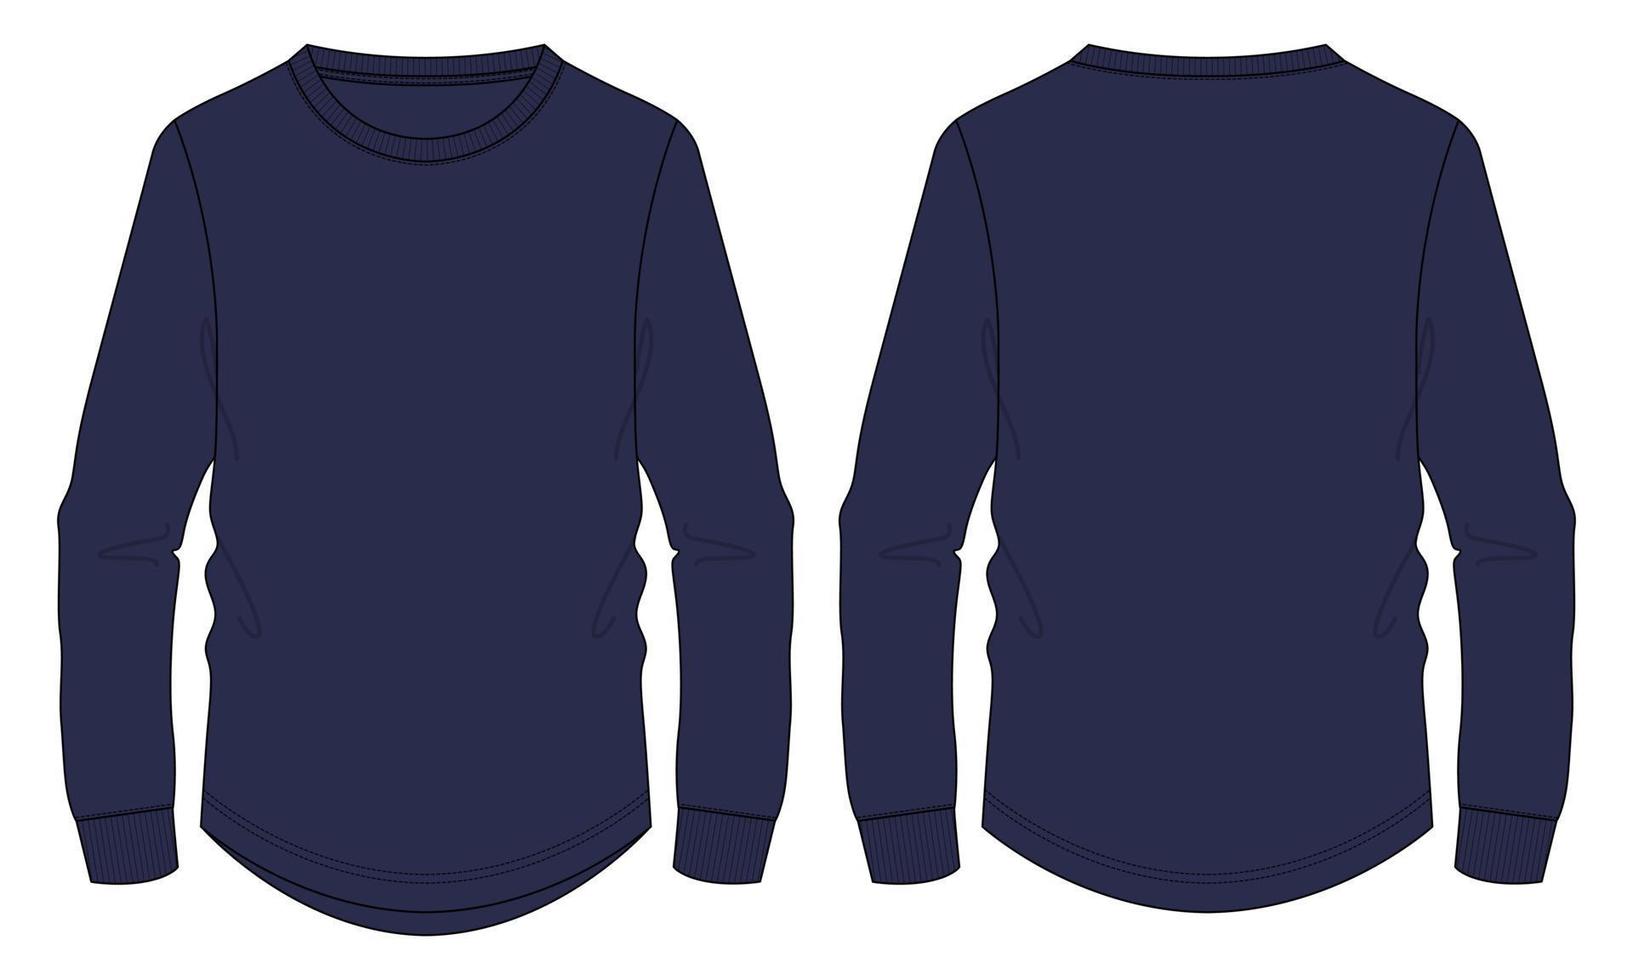 t-shirt a maniche lunghe tecnica moda schizzo piatto illustrazione vettoriale colore navy modello mock up per uomini e ragazzi.